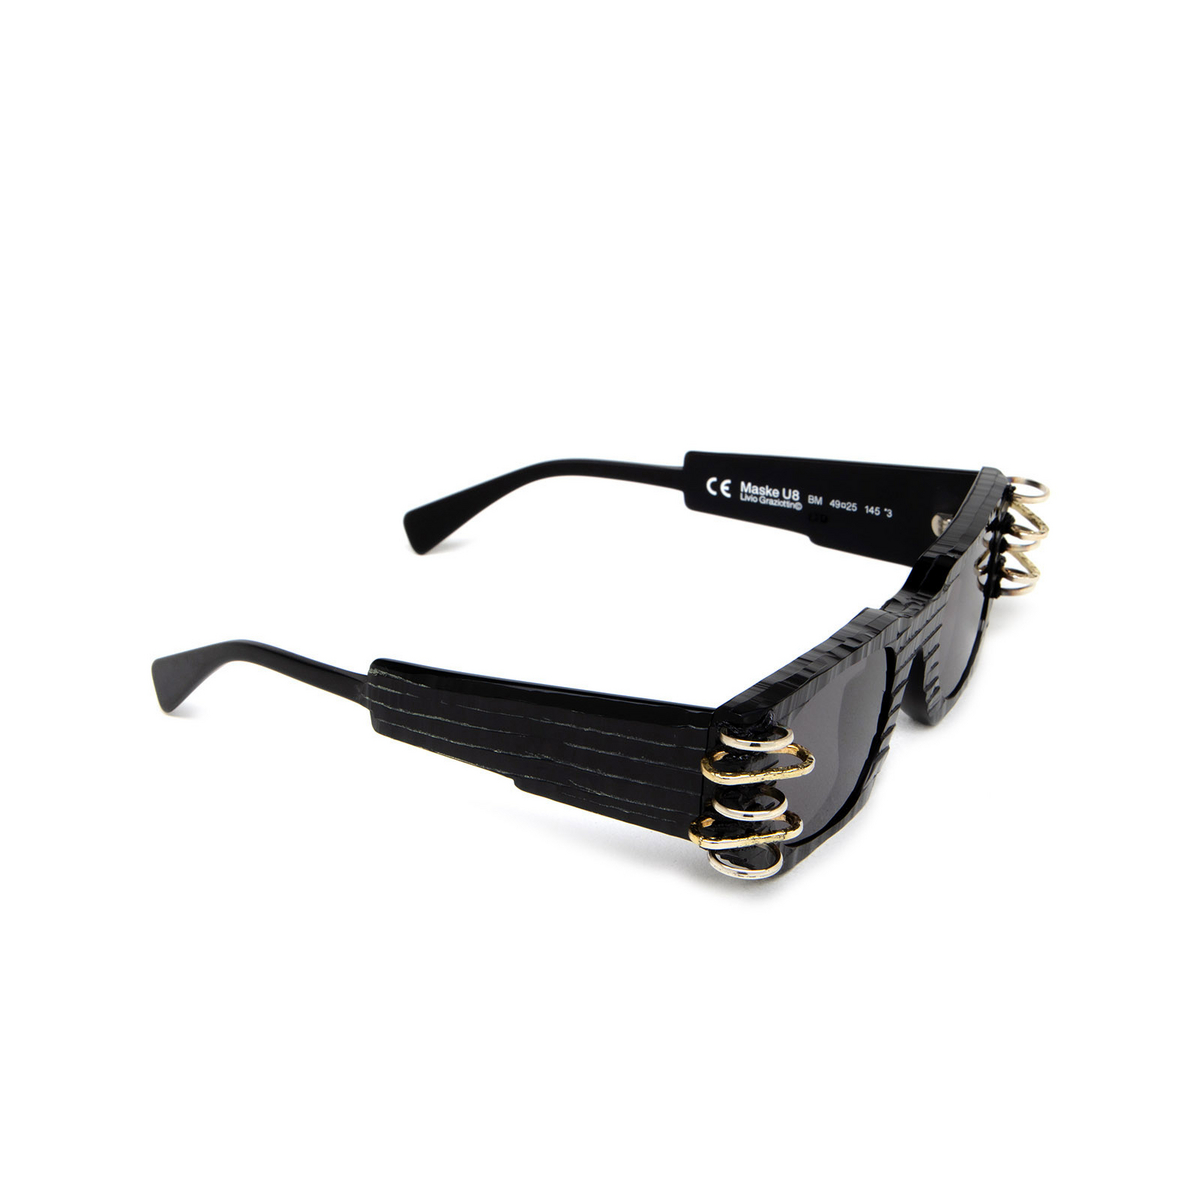 Kuboraum U8 Sunglasses BM LTD Black Matt Limited Edition - three-quarters view